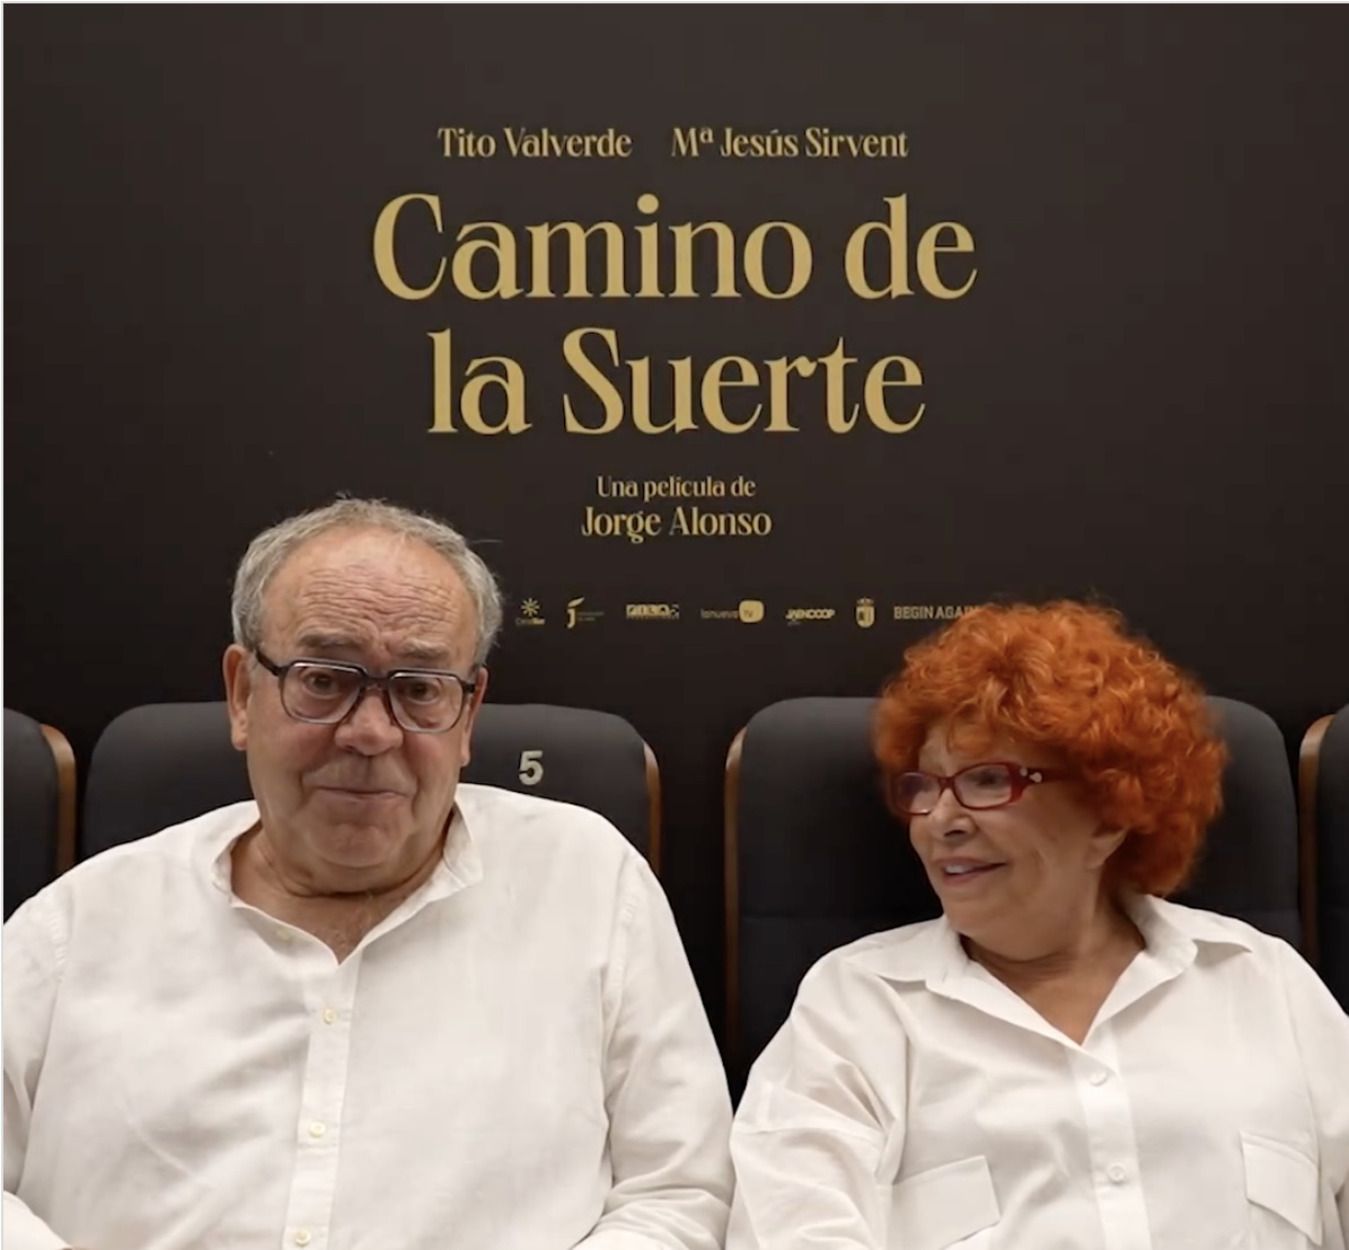 Tito Valverde y María Jesús Sirvent: "No interesan las películas que hablan de mayores"